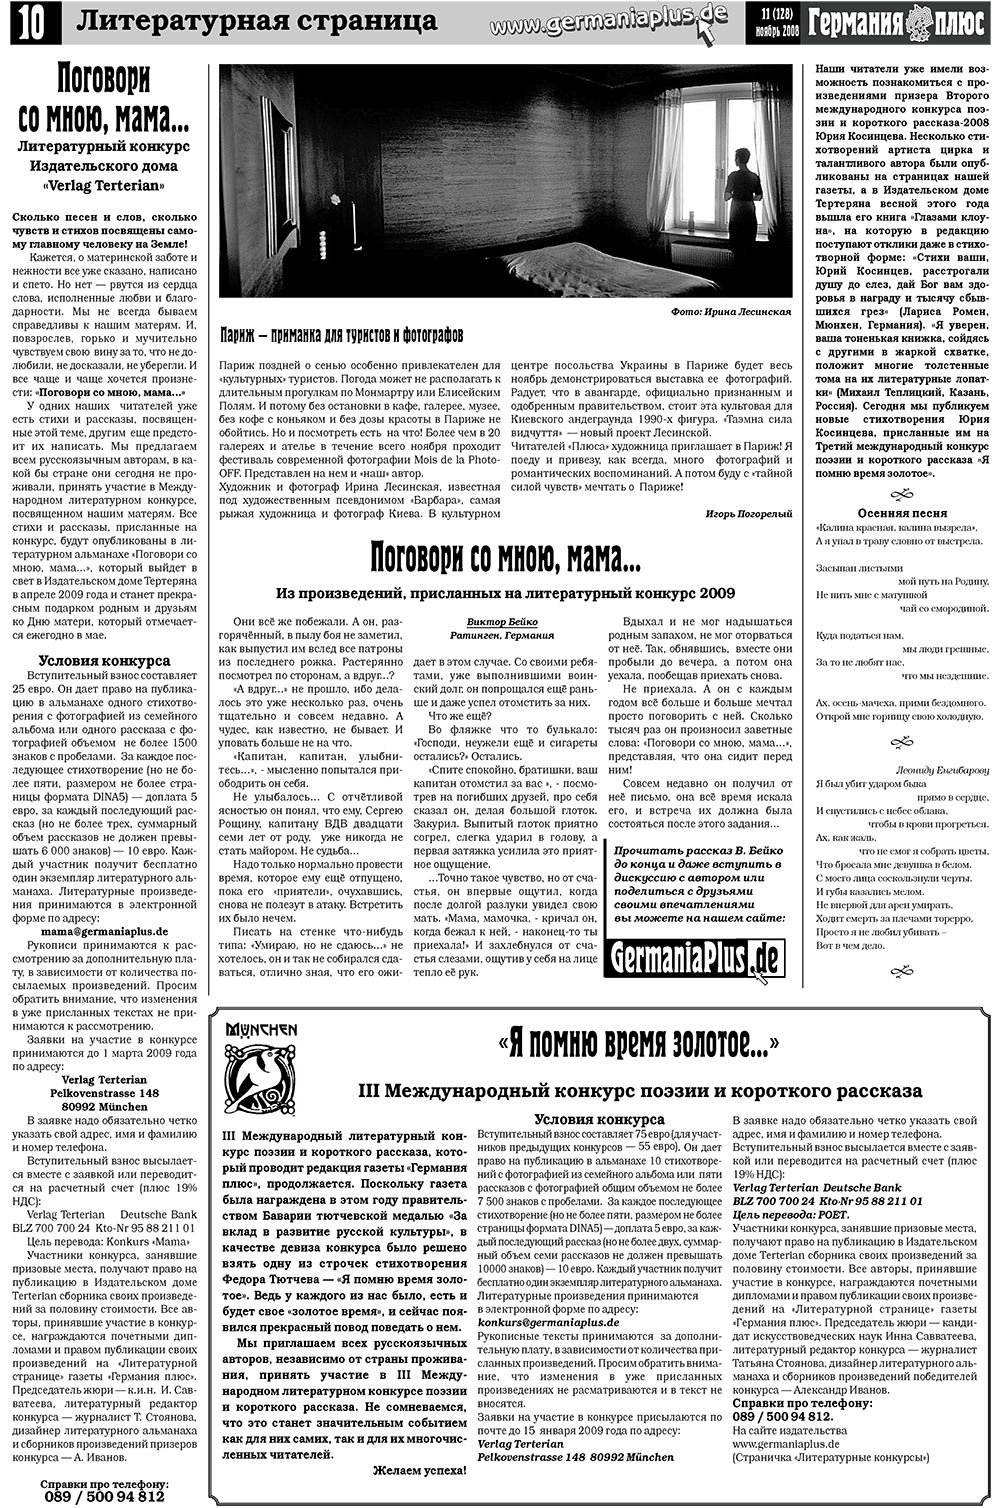 Германия плюс (газета). 2008 год, номер 11, стр. 12